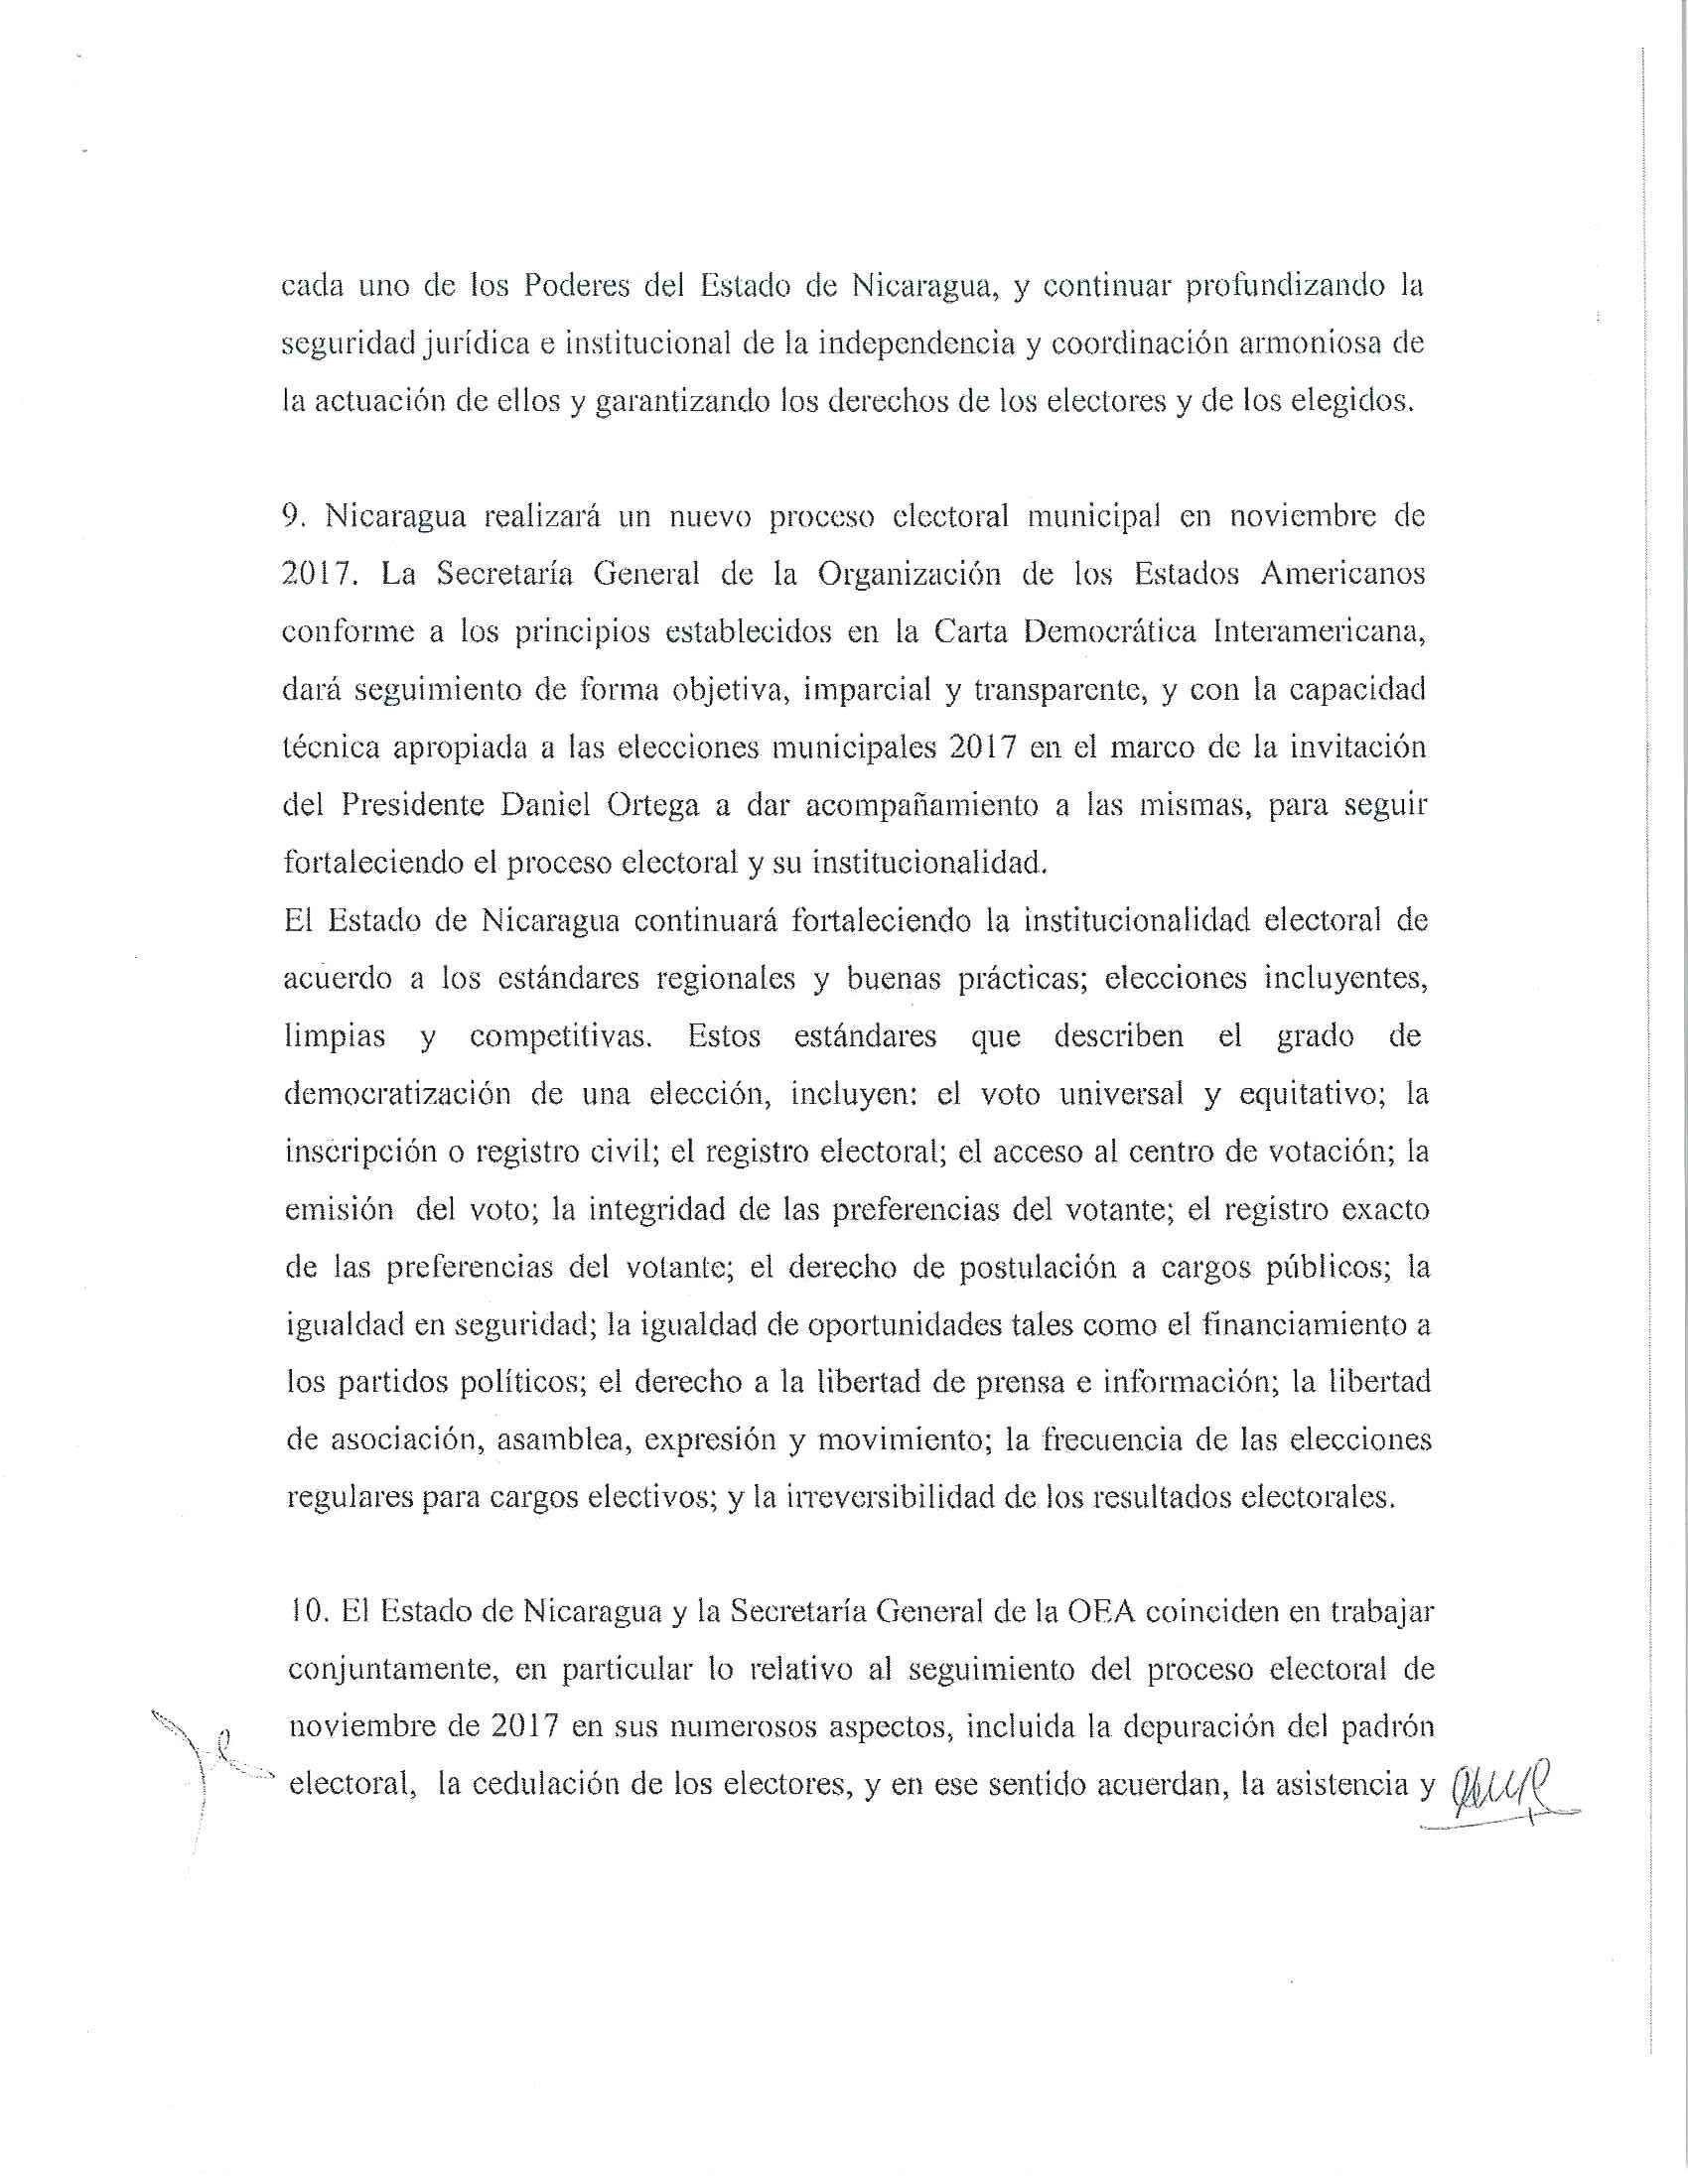 Acuerdo Nicaragua OEA 2017 4/6